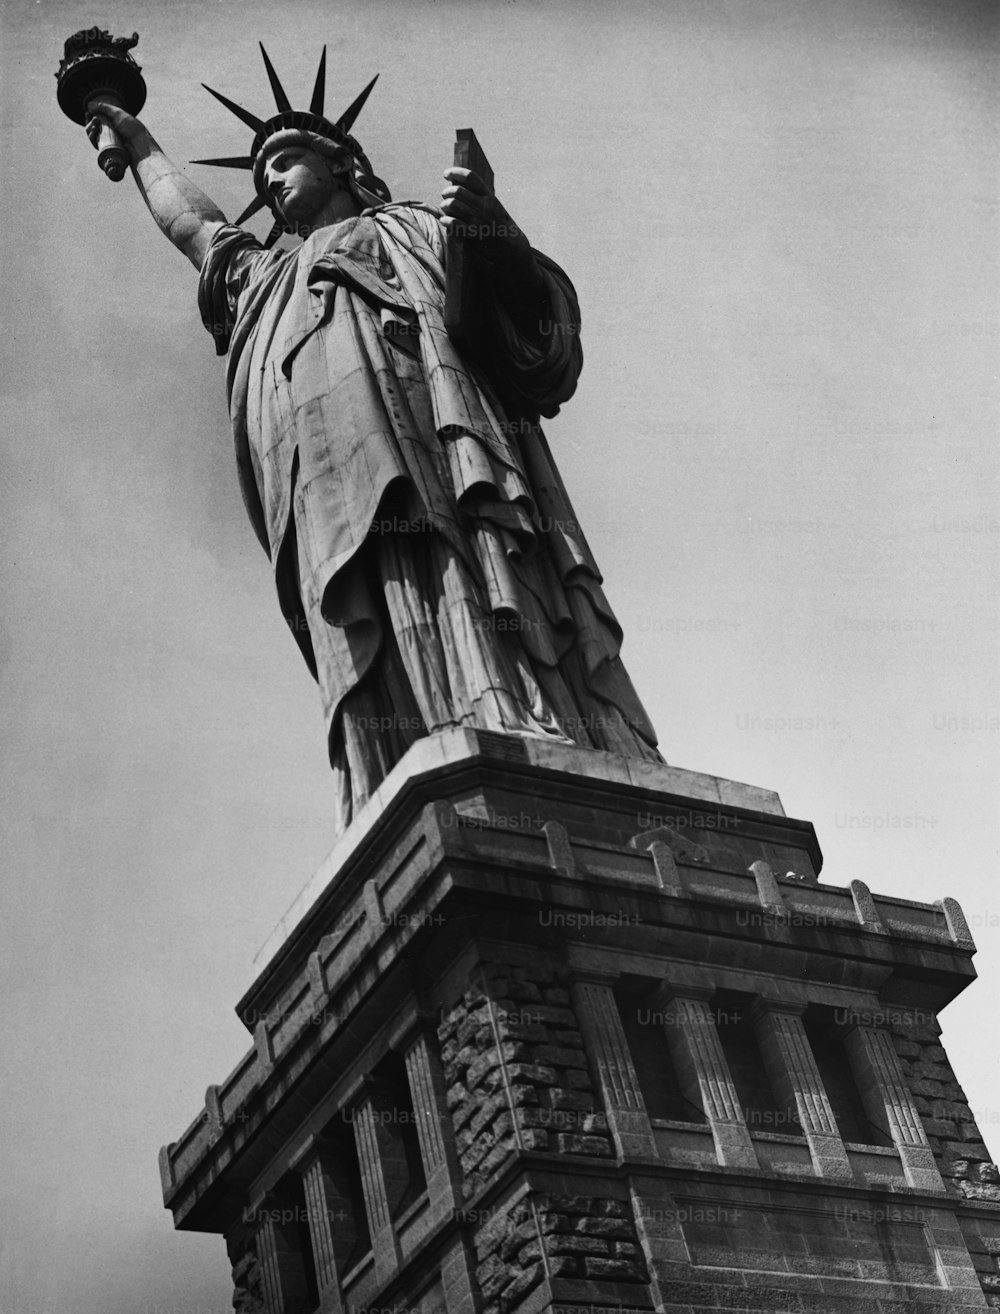 La Estatua de la Libertad en la Isla de la Libertad en la ciudad de Nueva York, Estados Unidos, alrededor de 1950.  (Foto de George Marks/Retrofile/Getty Images)